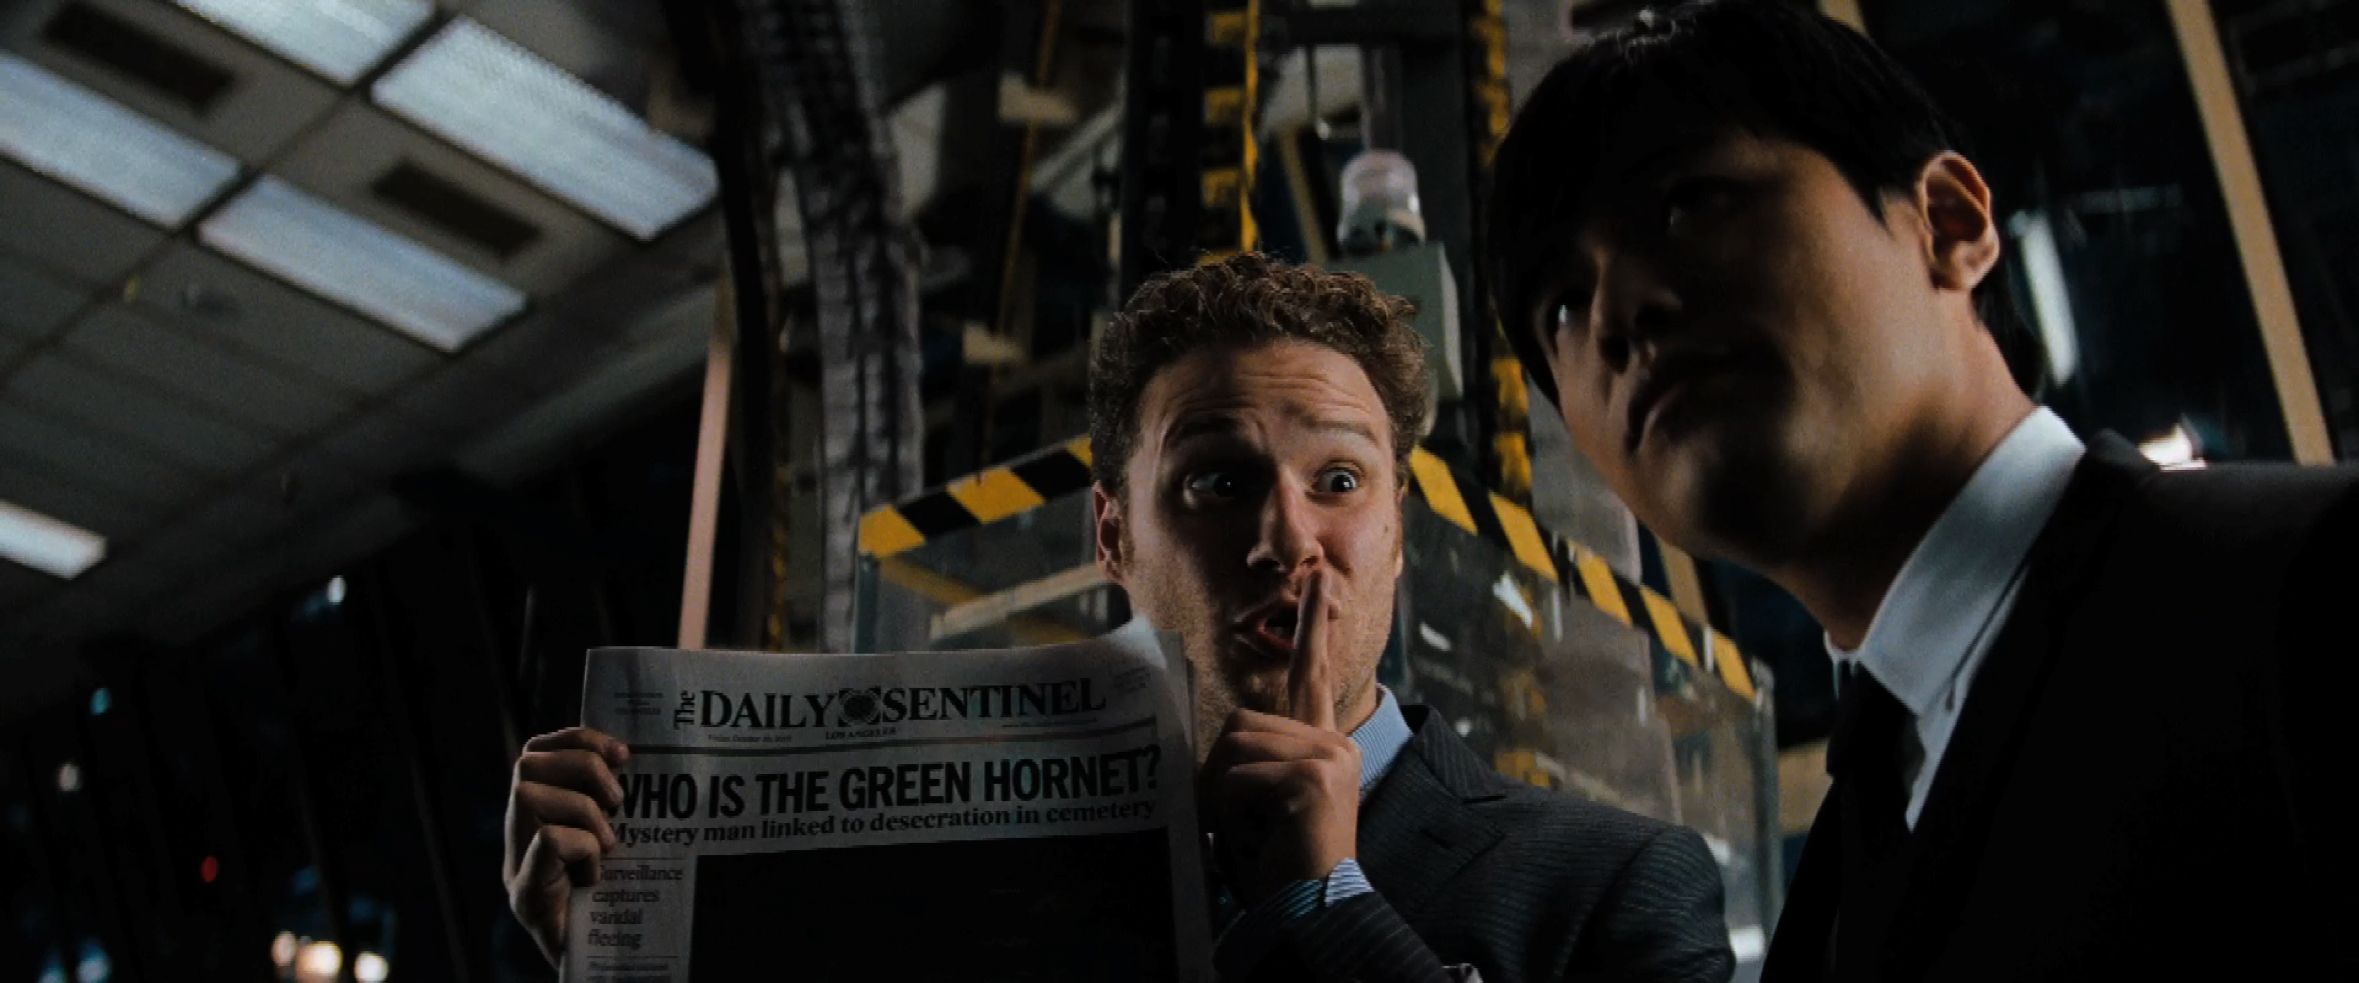 The Green Hornet Trailer Still #3